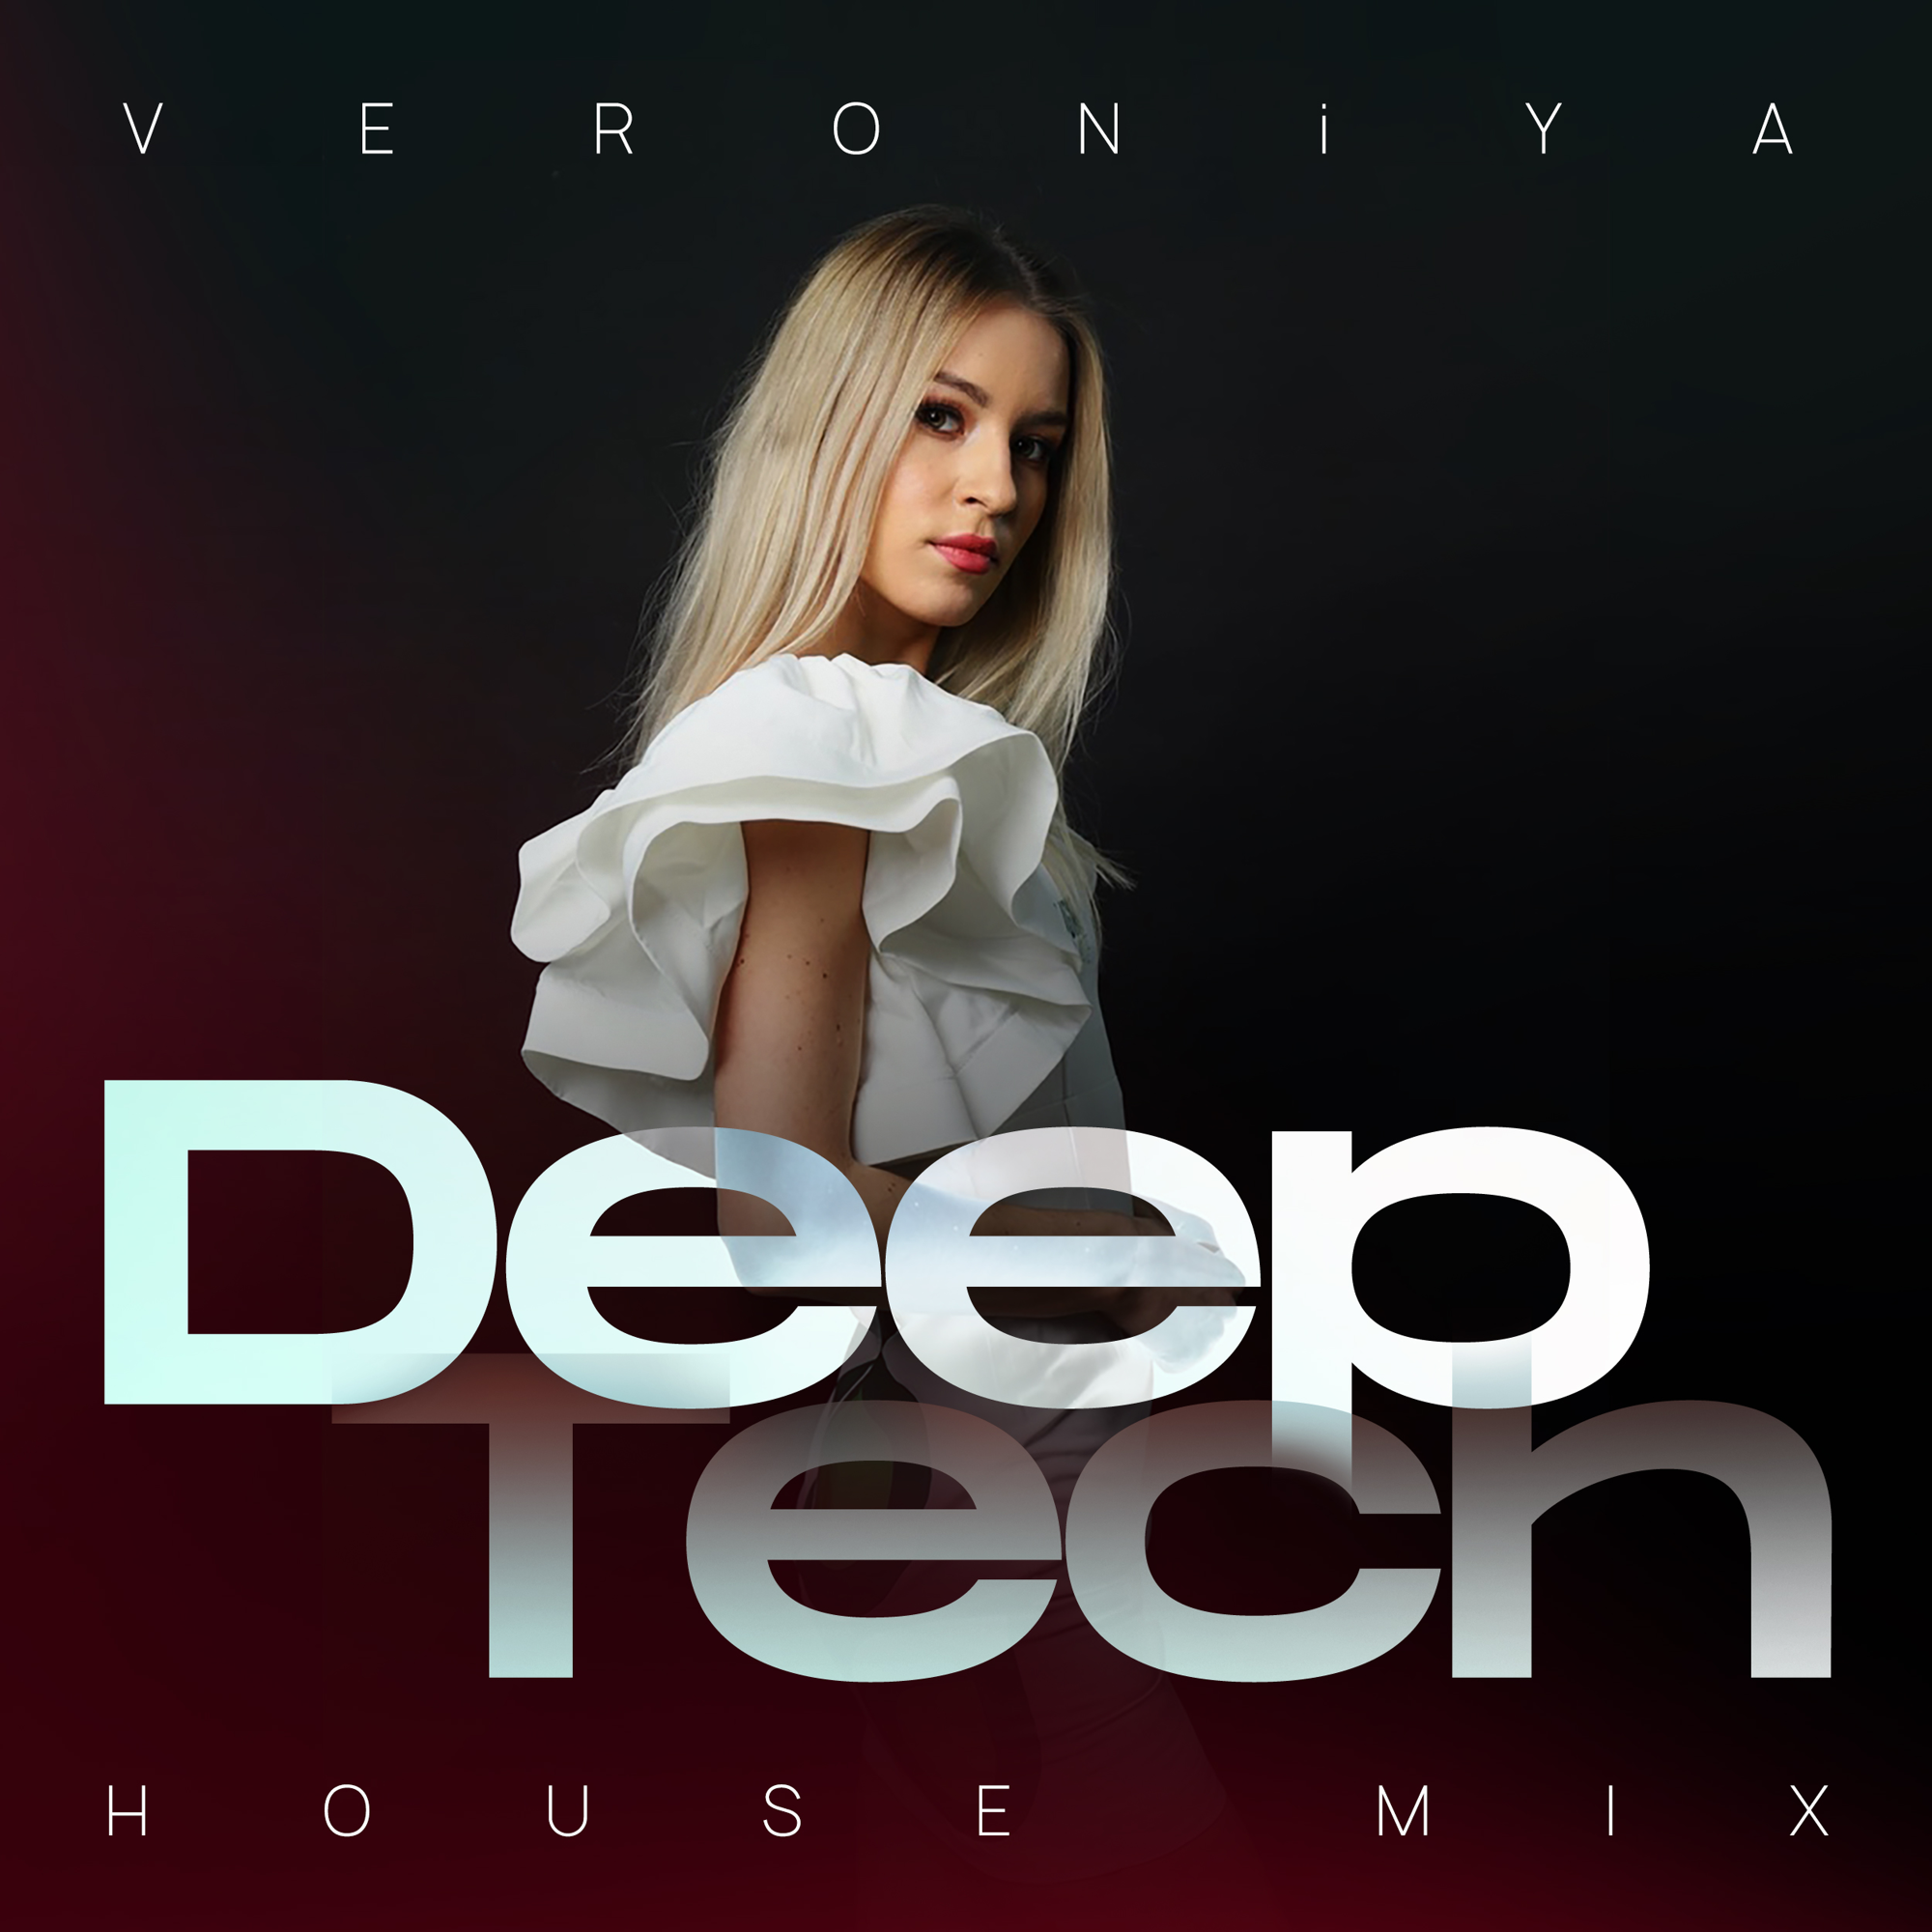 ‎Песня «Секс Без Перерыва (Deep House Mix)» — DJ Groove & Мальчишник — Apple Music